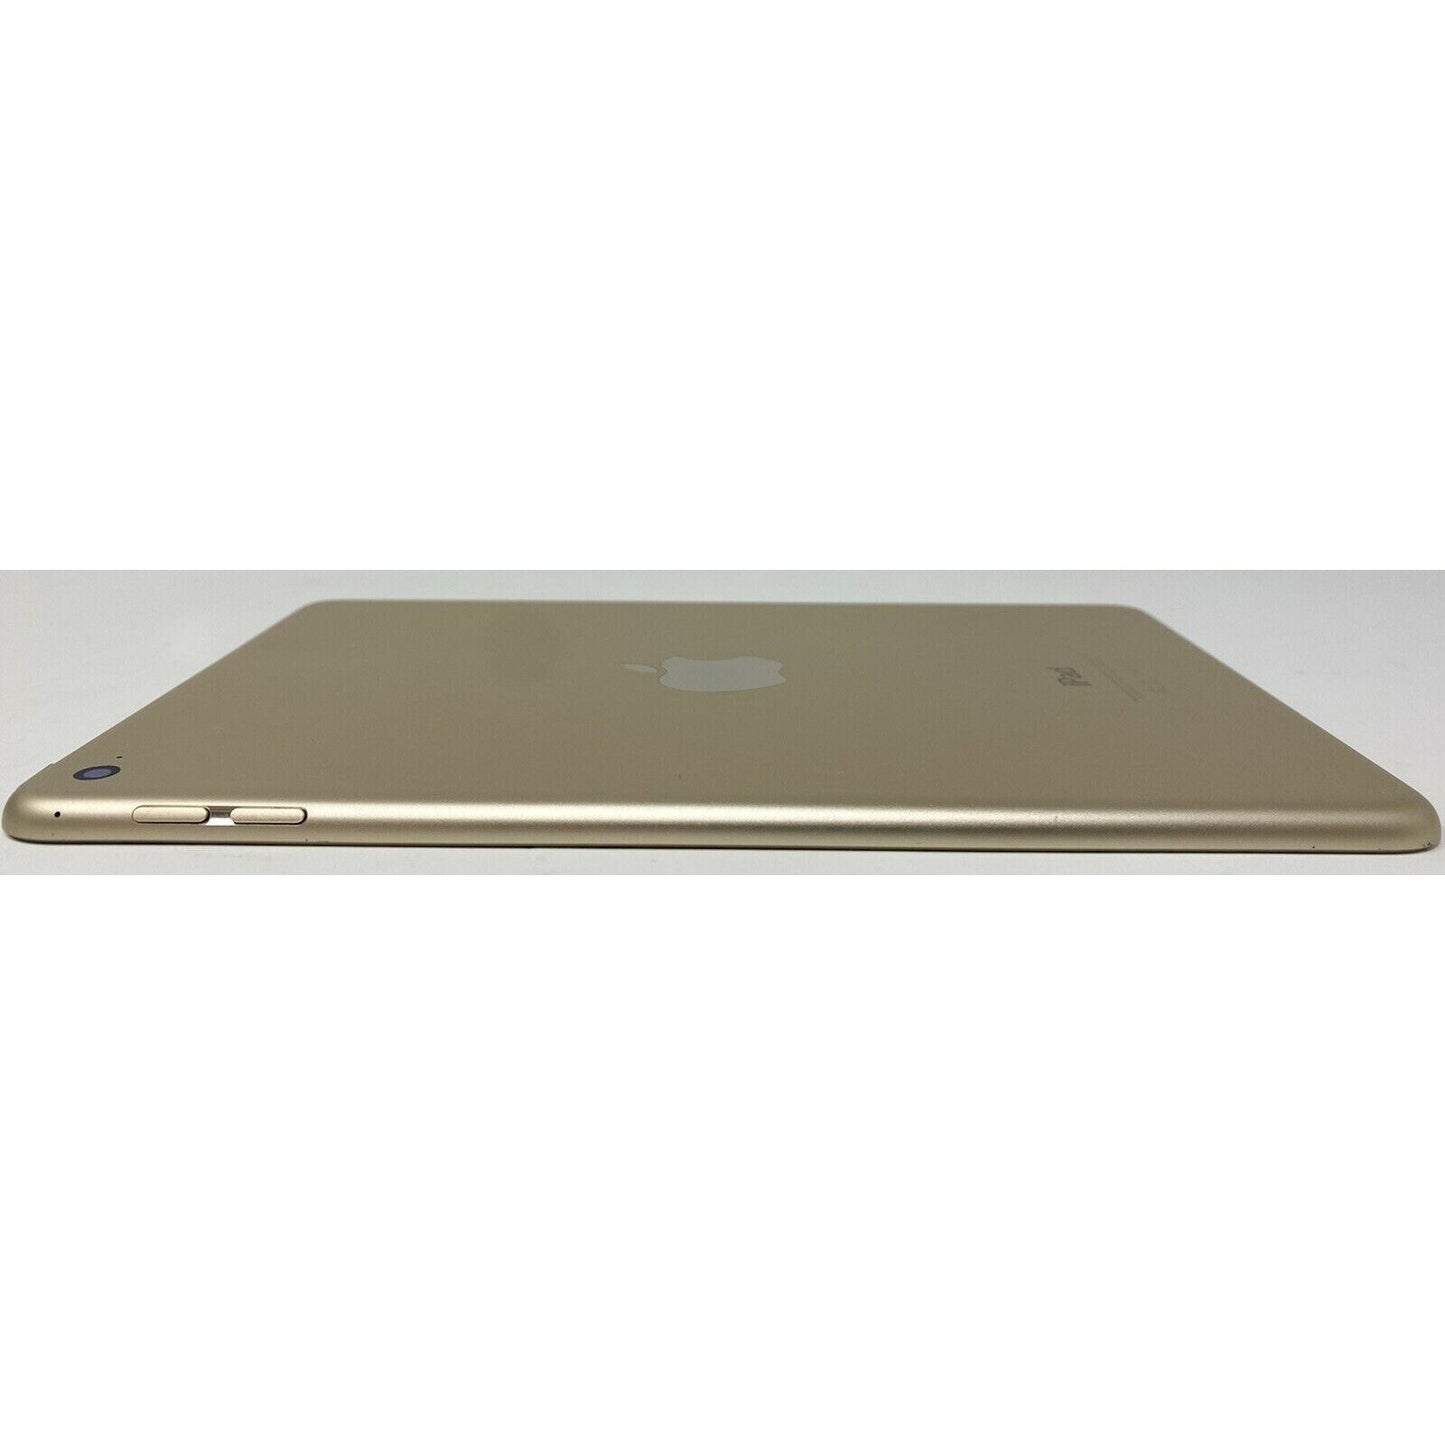 POWER BUTTON NOT WORKING - Apple MK9J2LL/A iPad mini 4 64GB, Wi-Fi, 7.9" - Gold